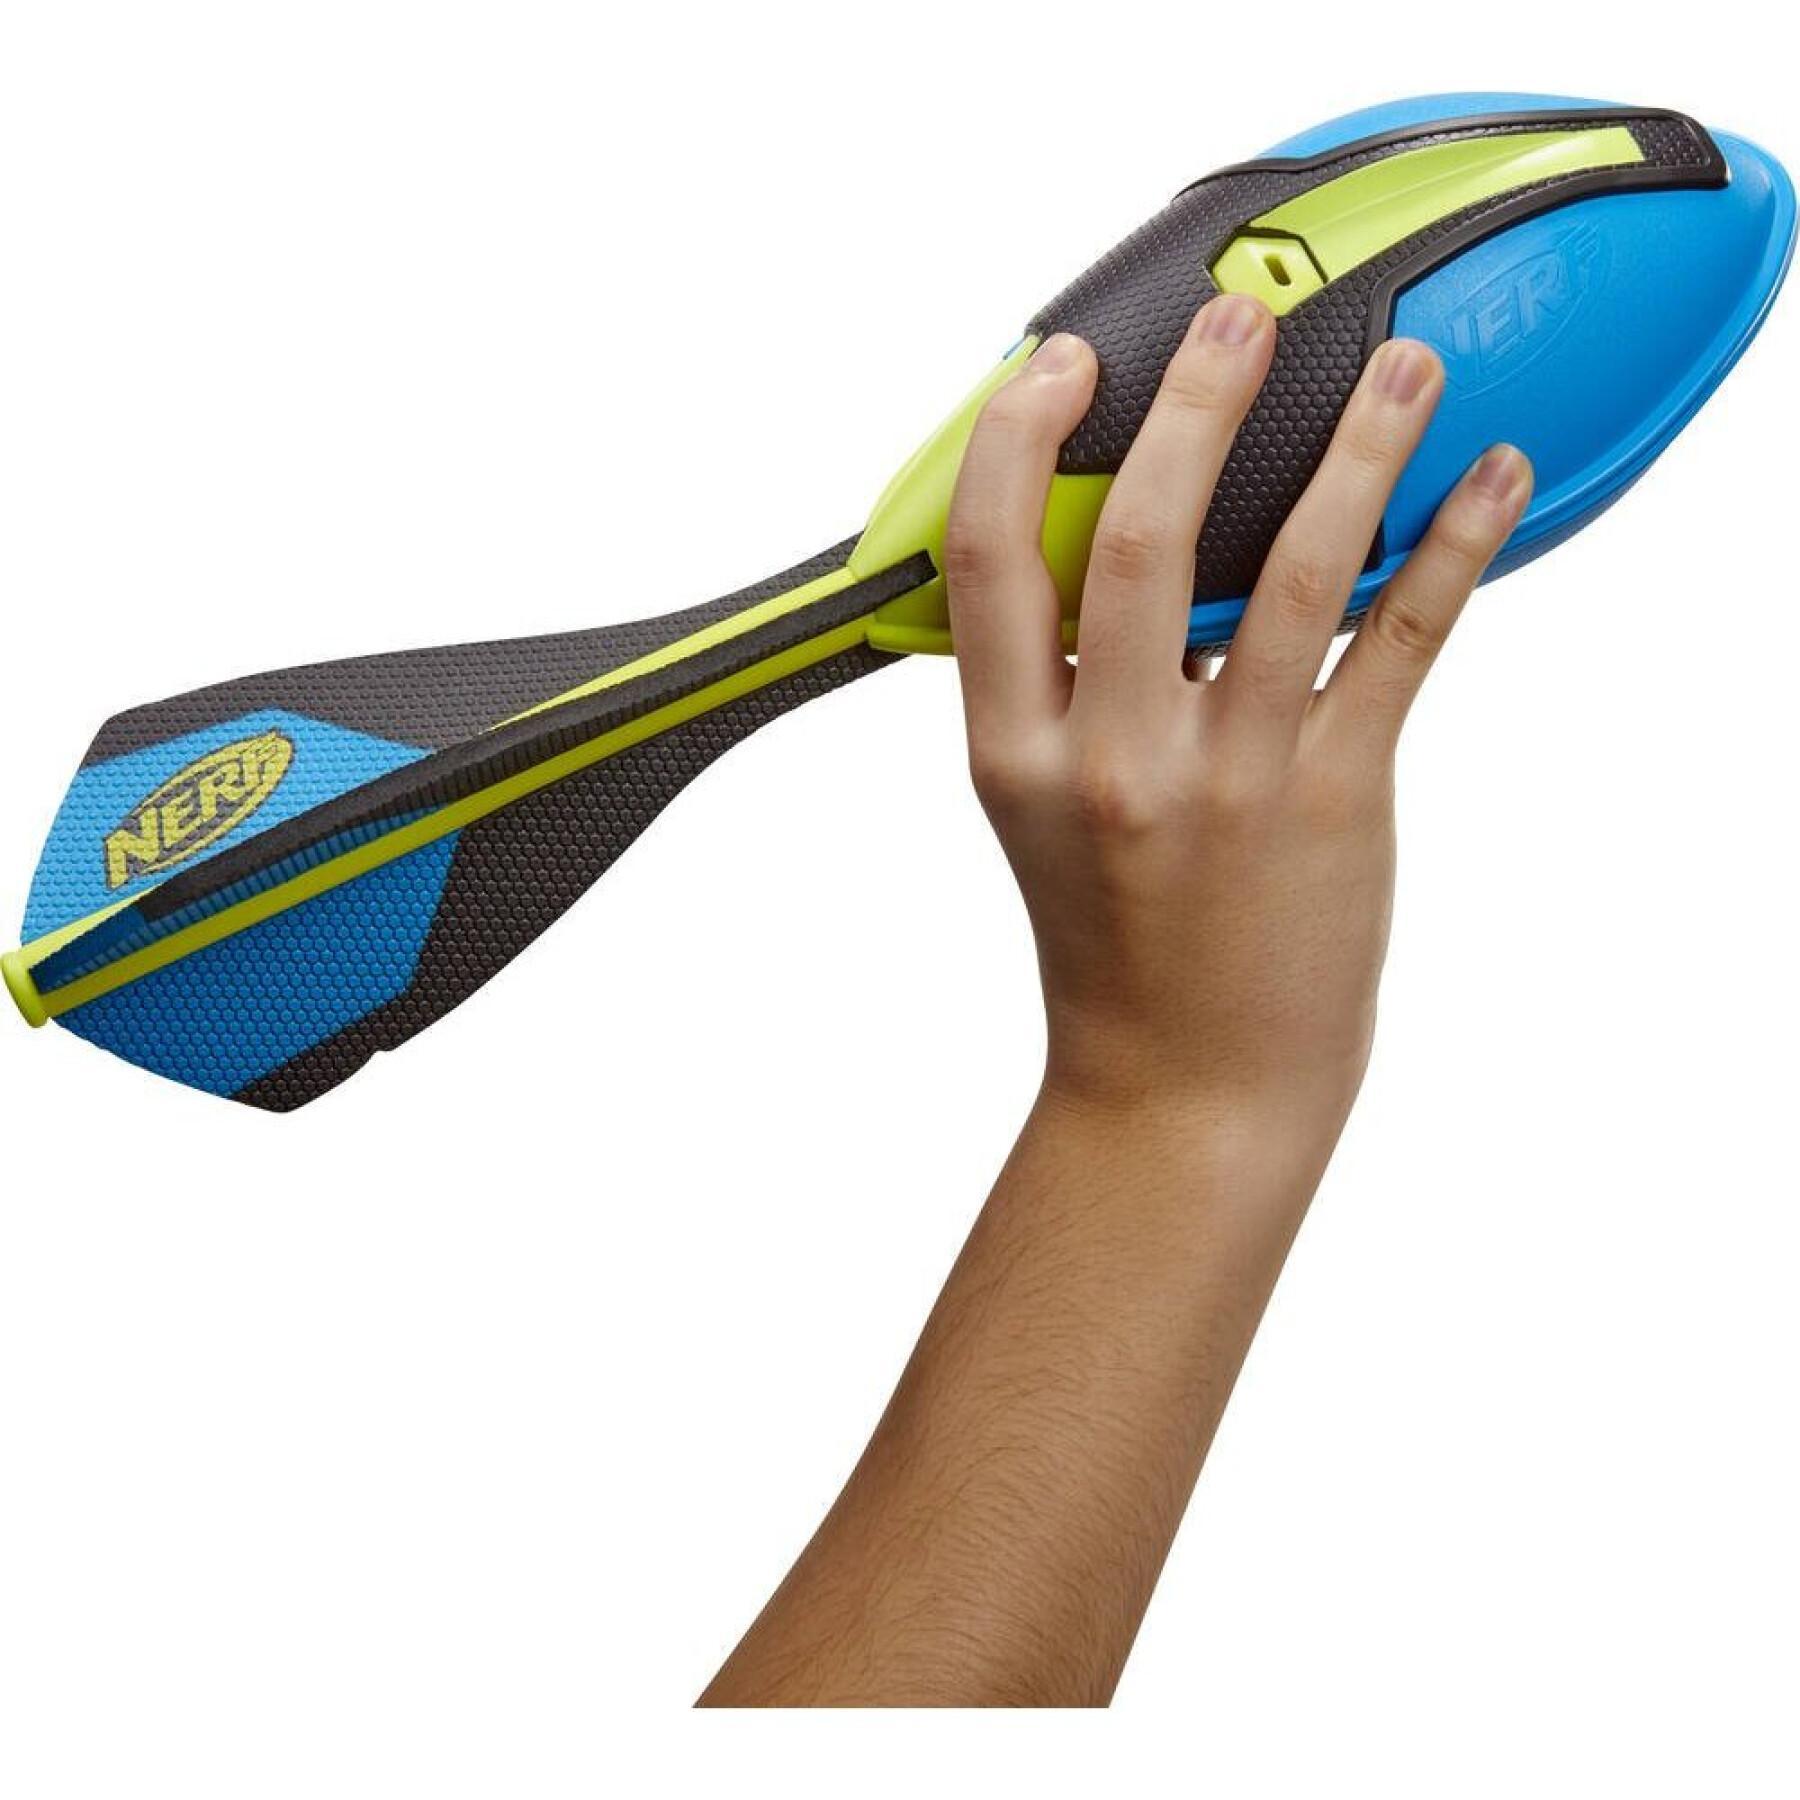 Giochi di abilità Hasbro France Nerf Vortex Ultra Ballon Foot